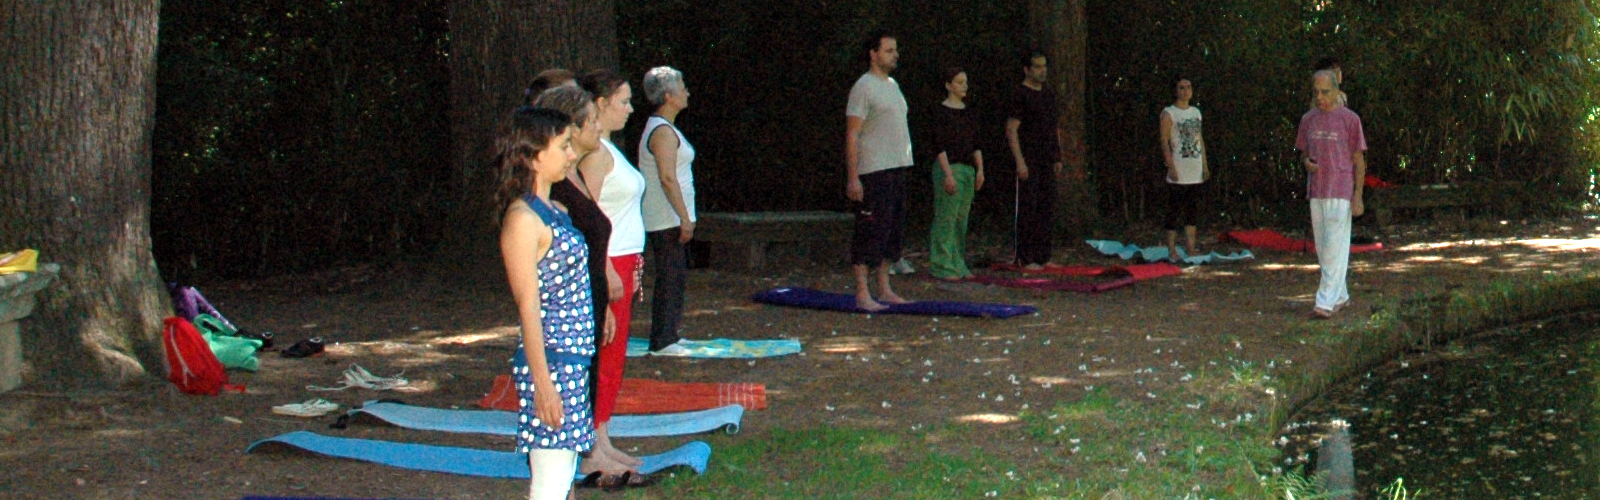 Aulas de Yoga no Mosteiro de Tibães. Uma proposta de atividade para fortalecer o corpo e a mente.